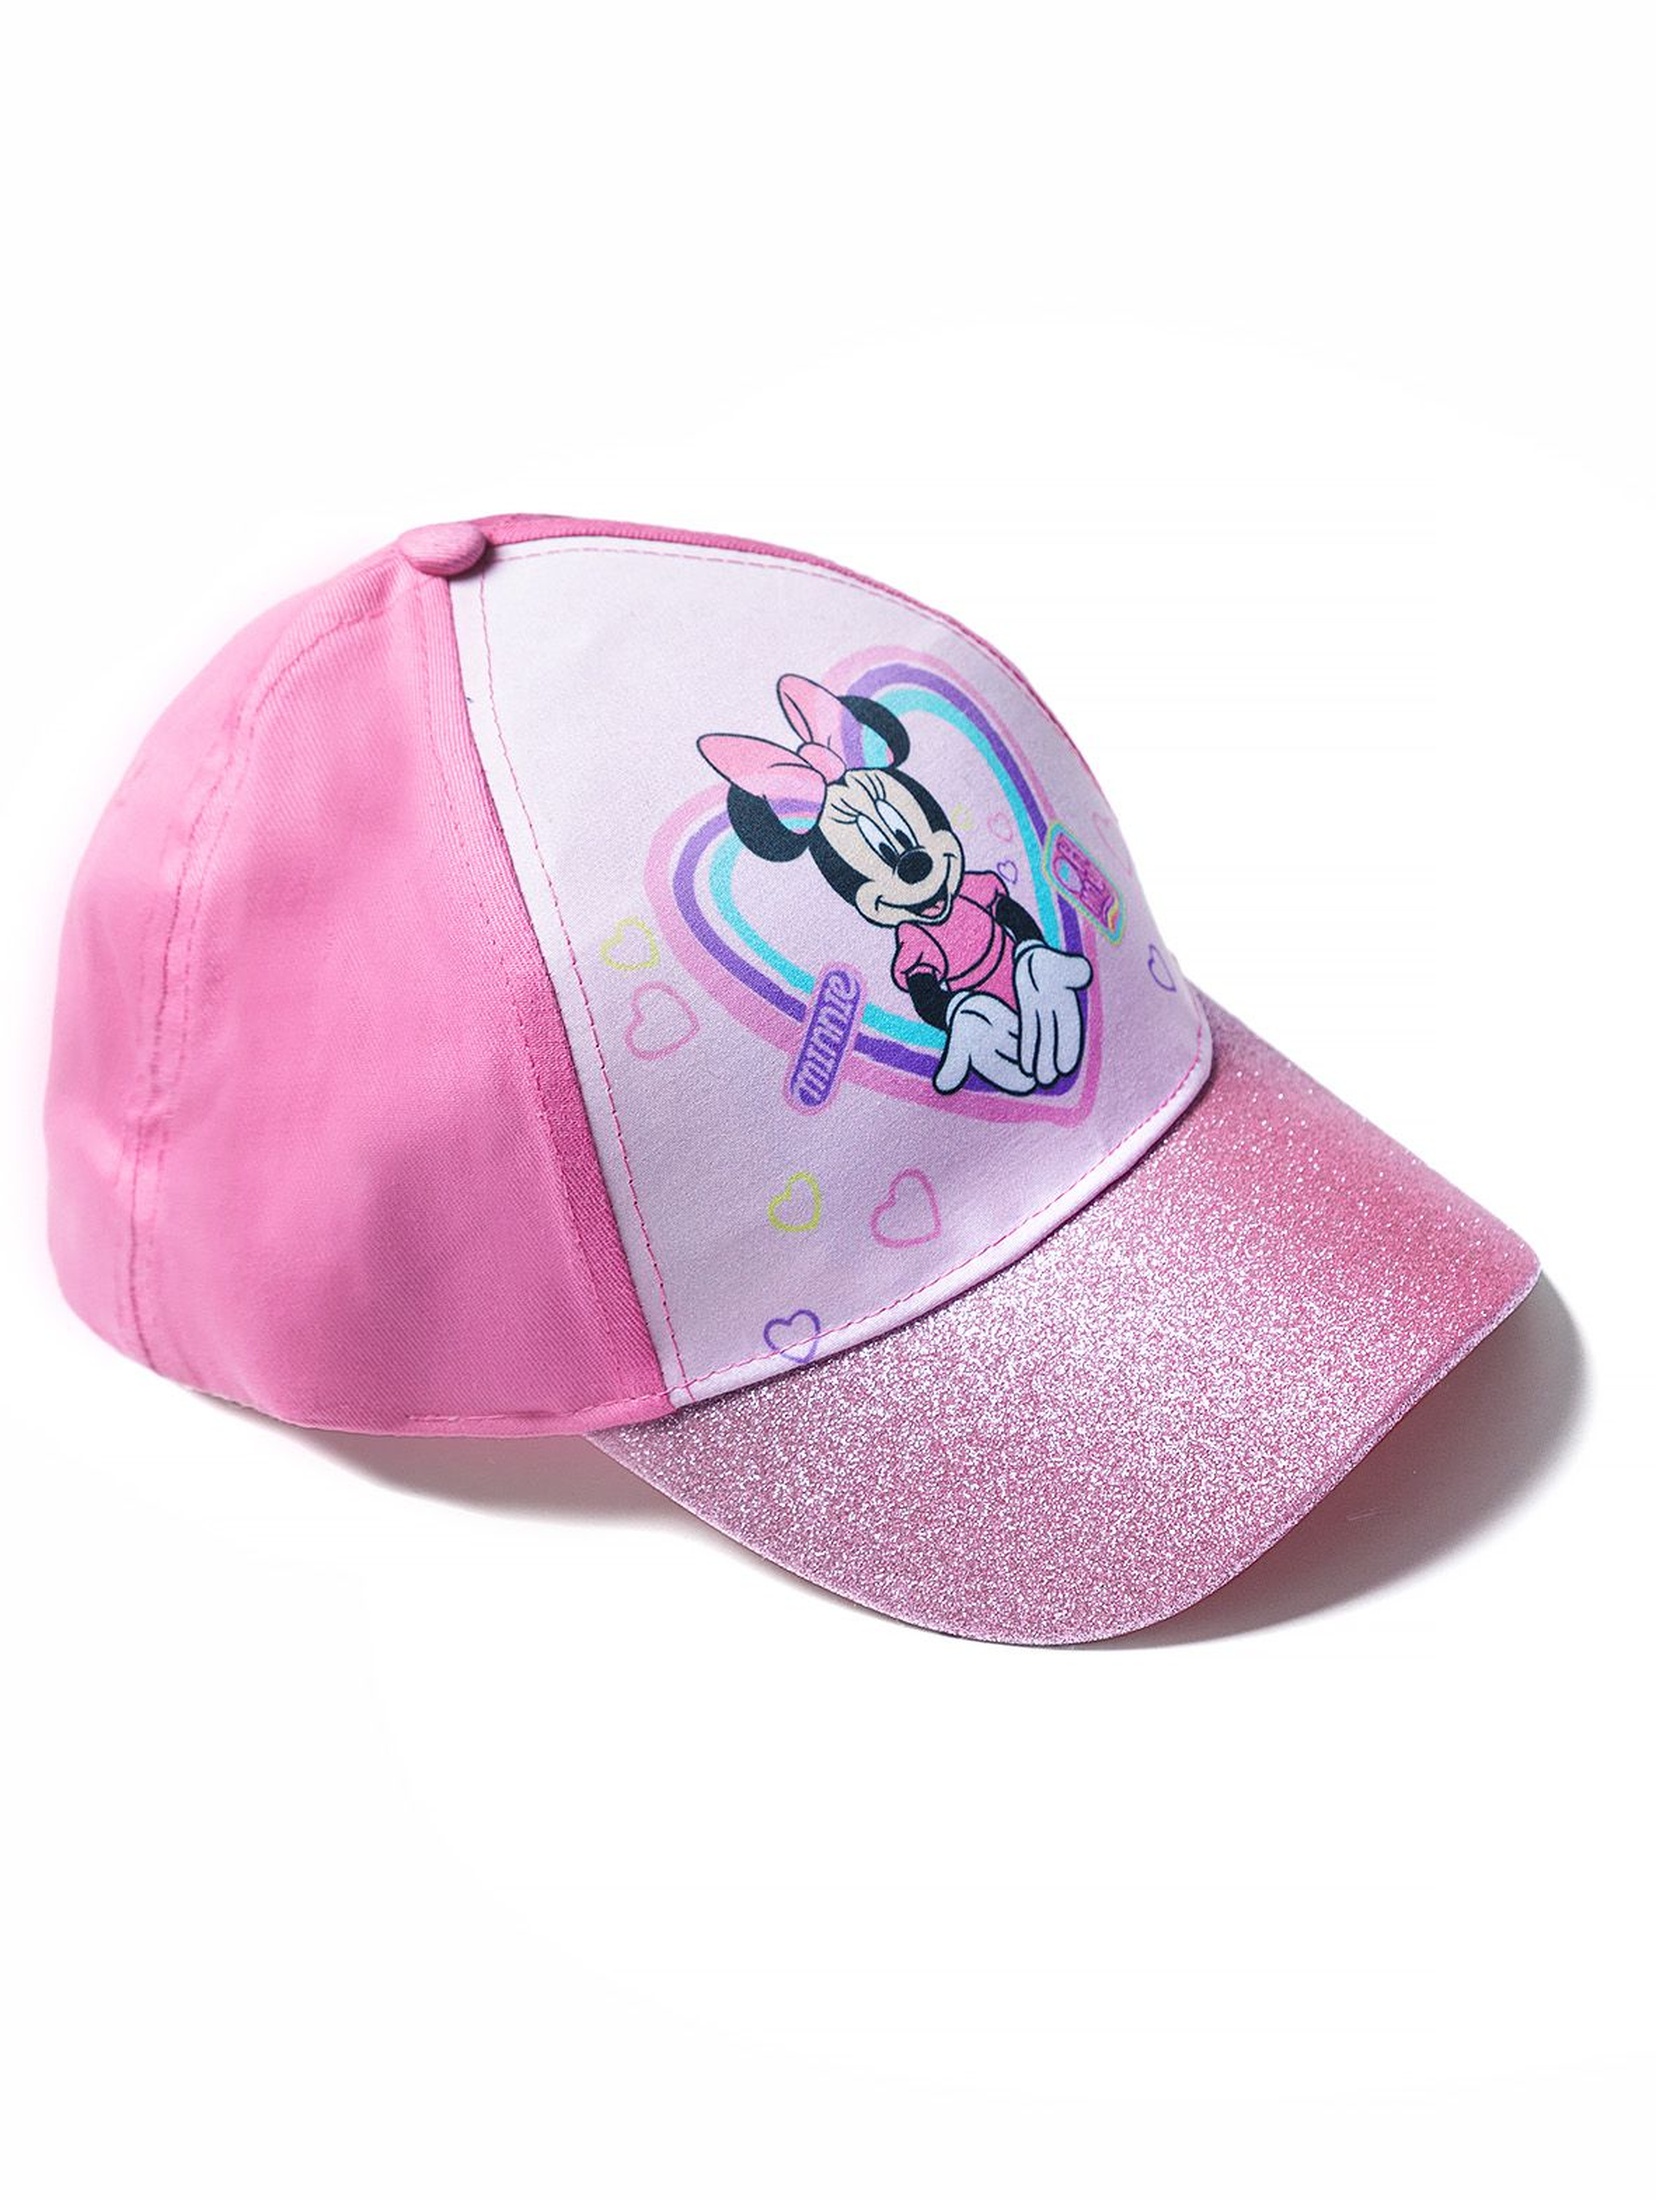 Bawełniana czapka dziewczęca z daszkiem Minnie Mouse - różowa